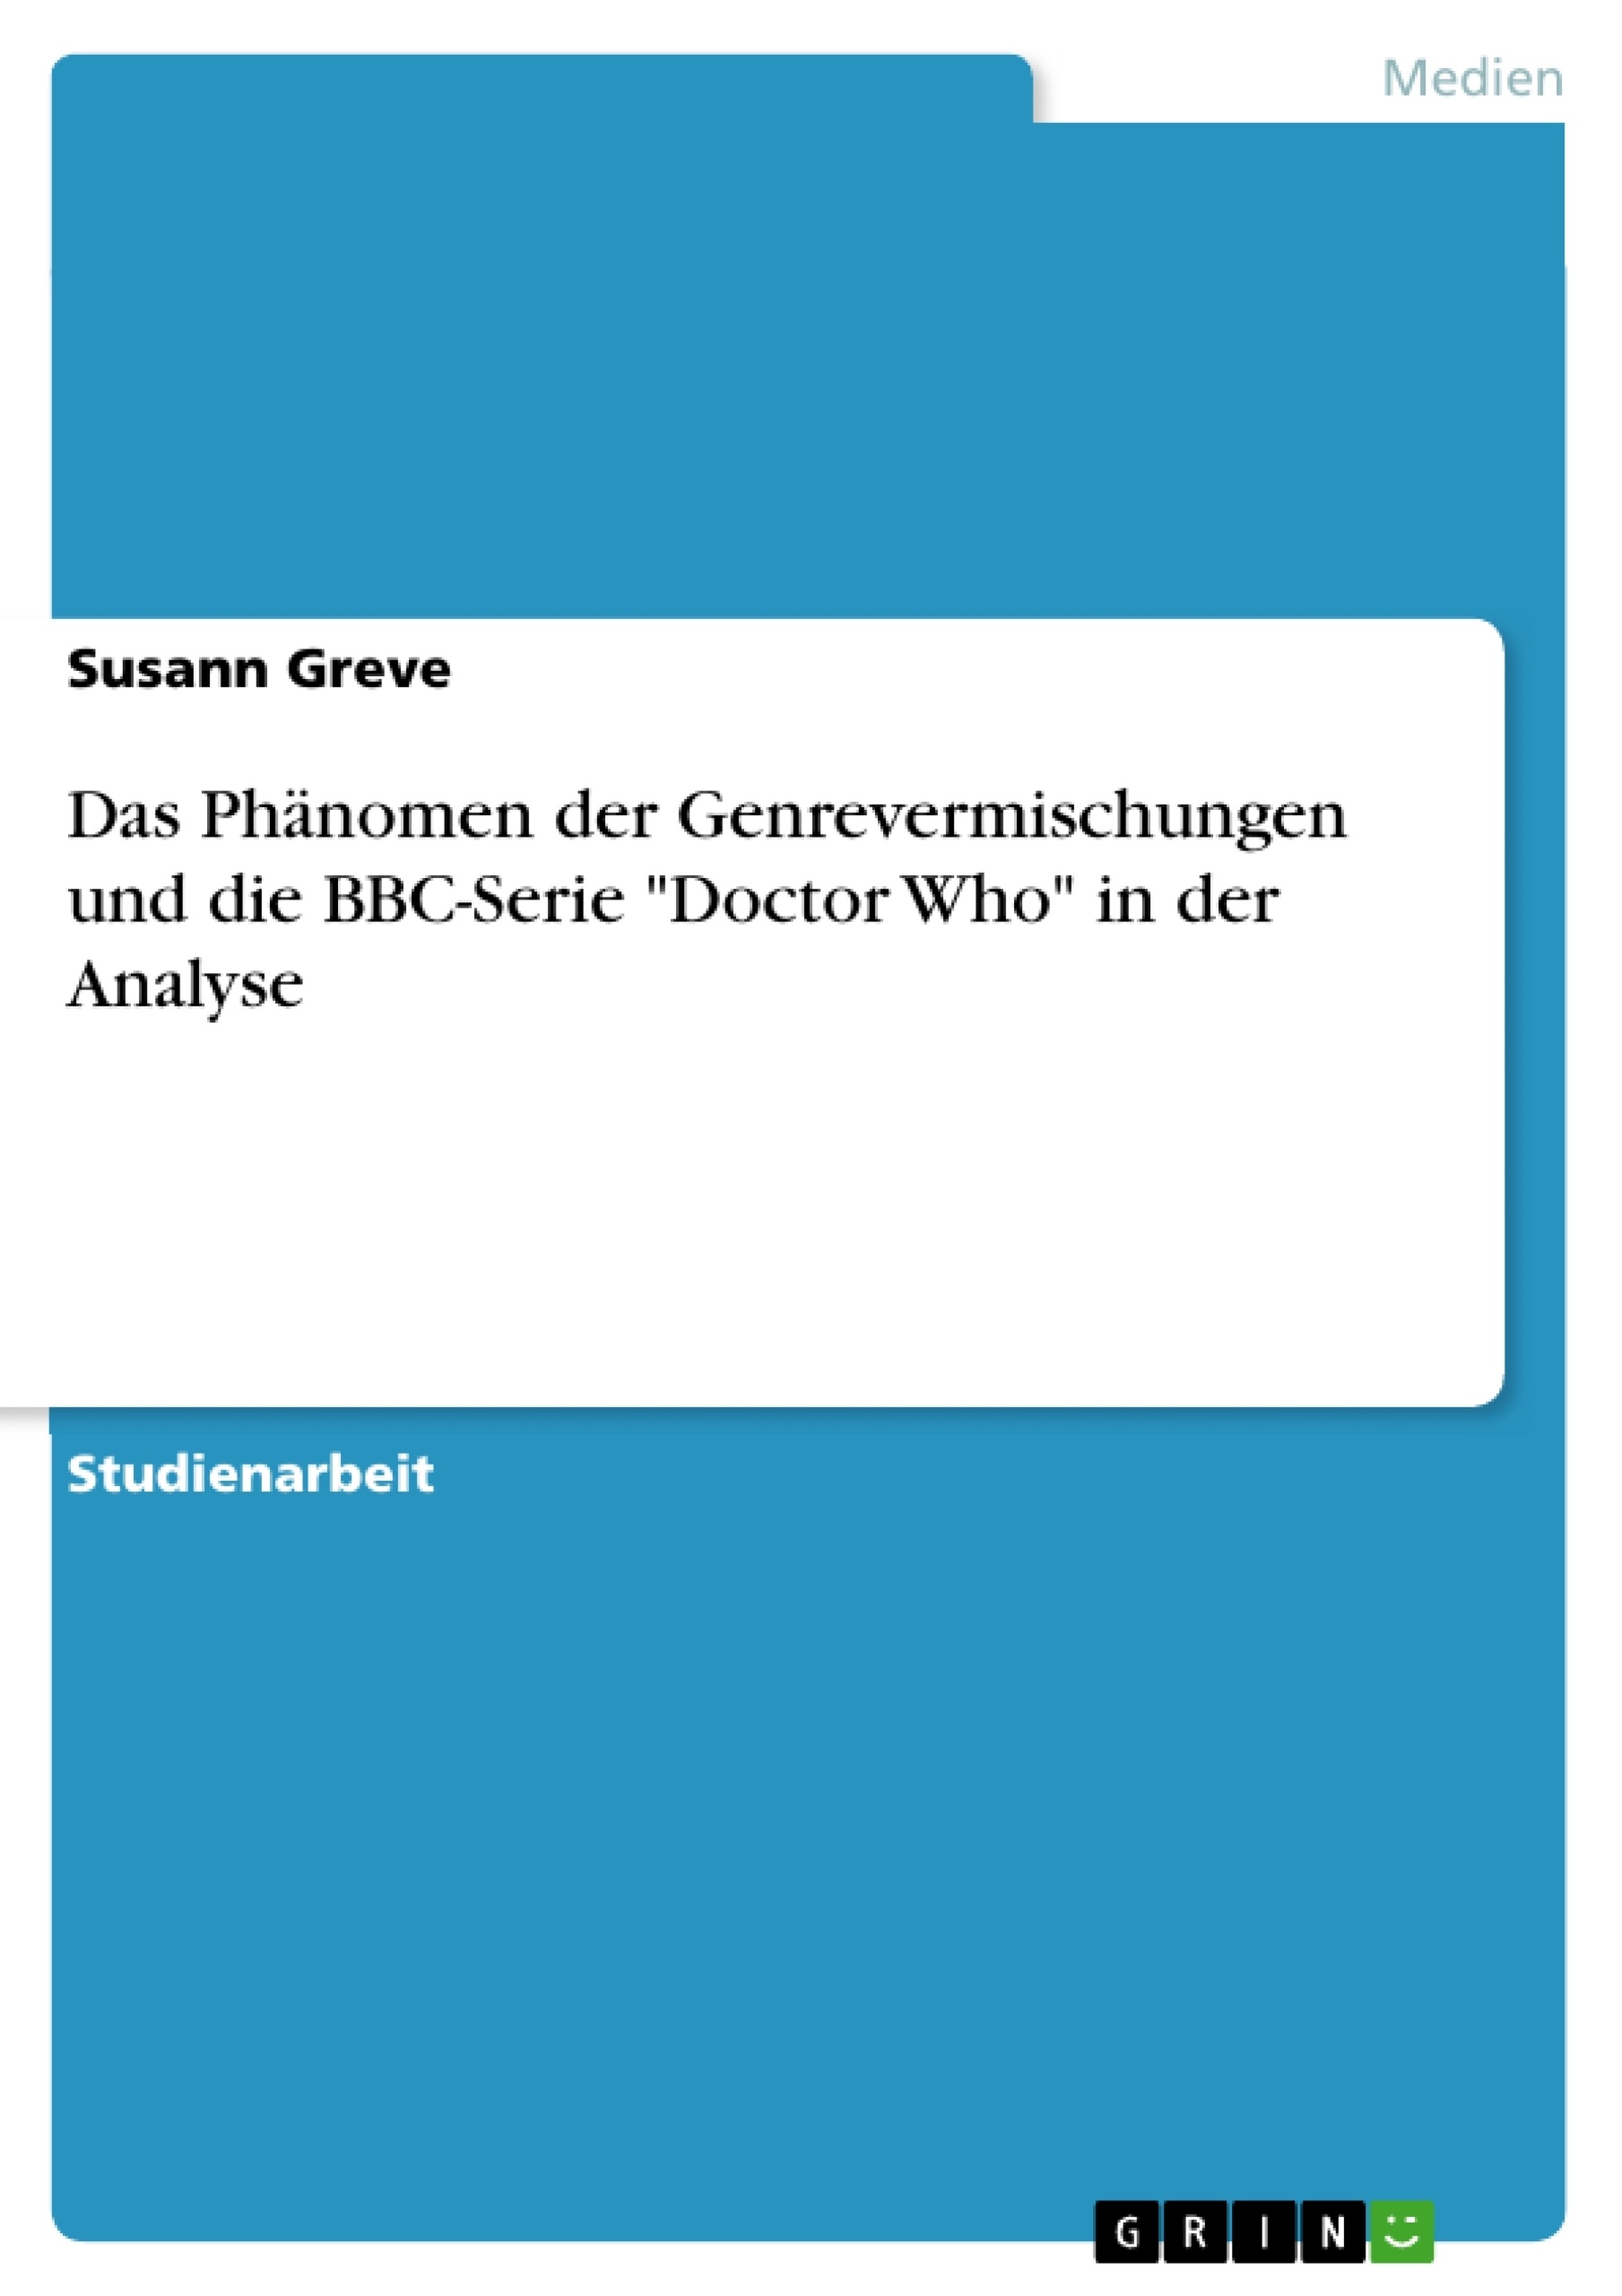 Titre: Das Phänomen der Genrevermischungen und die BBC-Serie "Doctor Who" in der Analyse